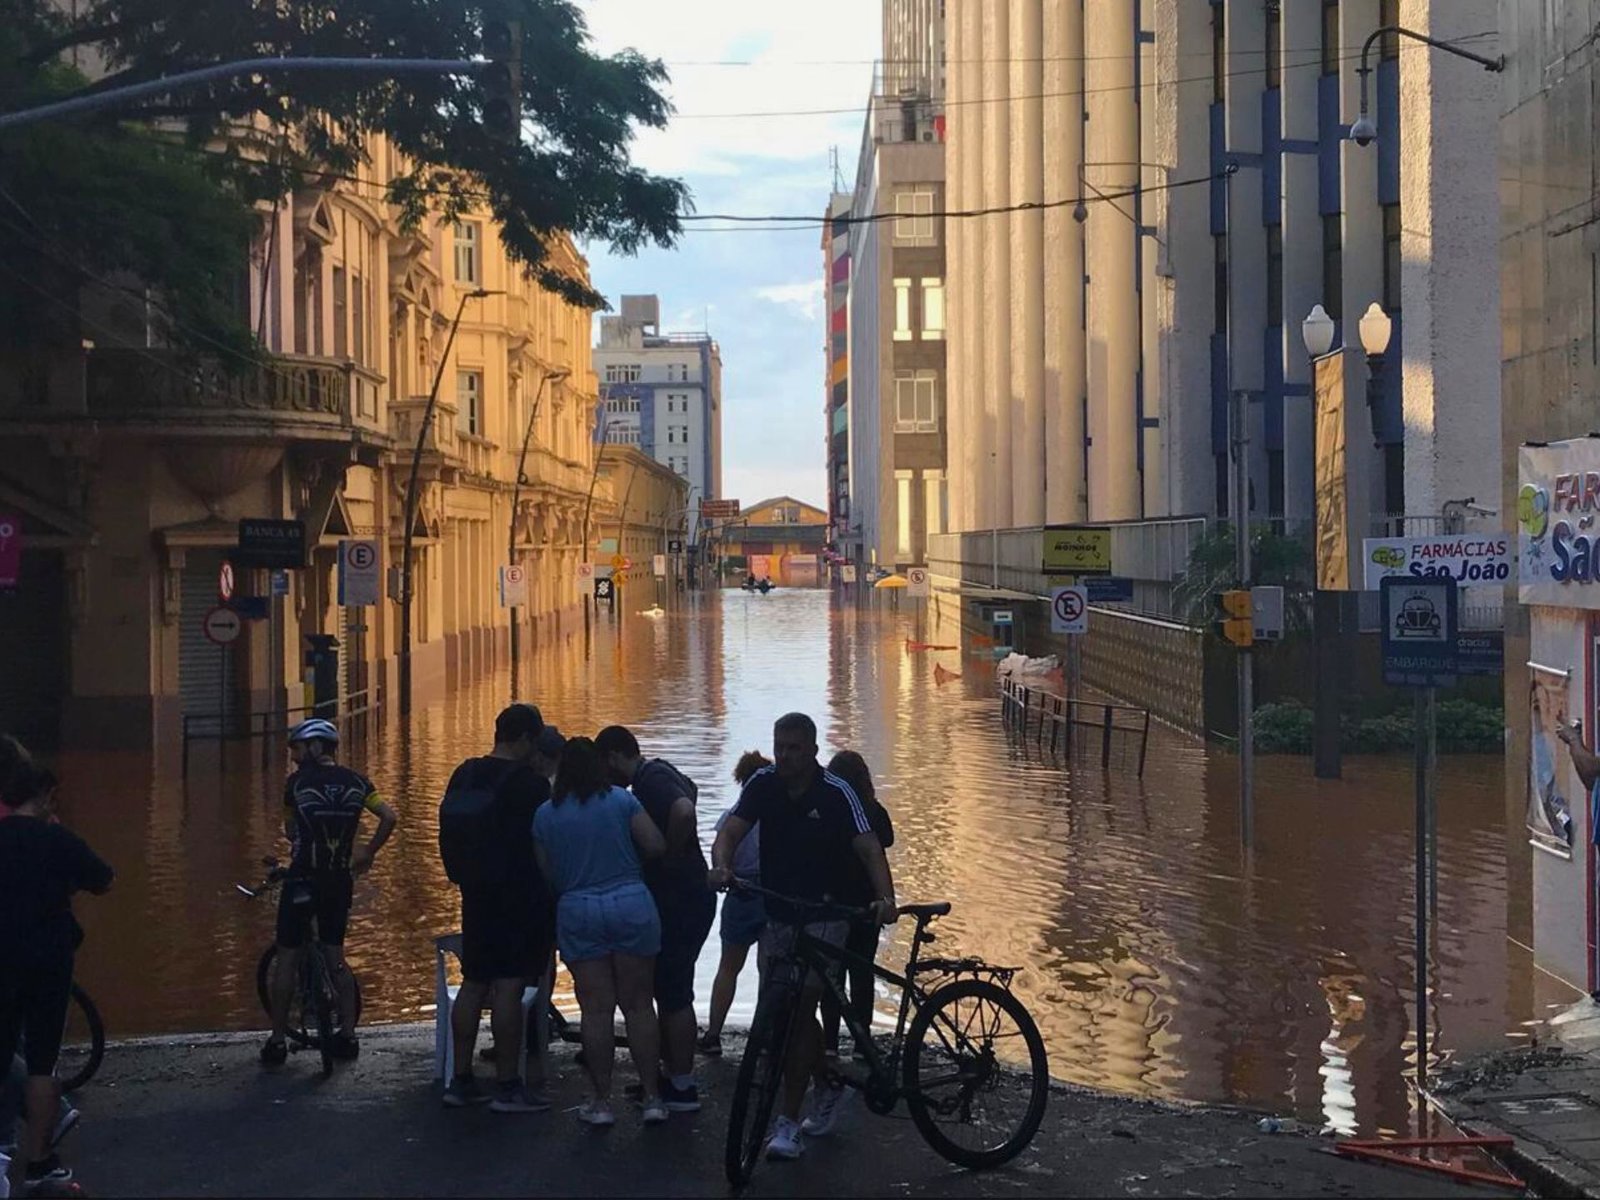 A imagem mostra enchentes em Porto Alegre, com a água invadindo o centro da cidade, enquanto cicloturistas observam a tragédia.